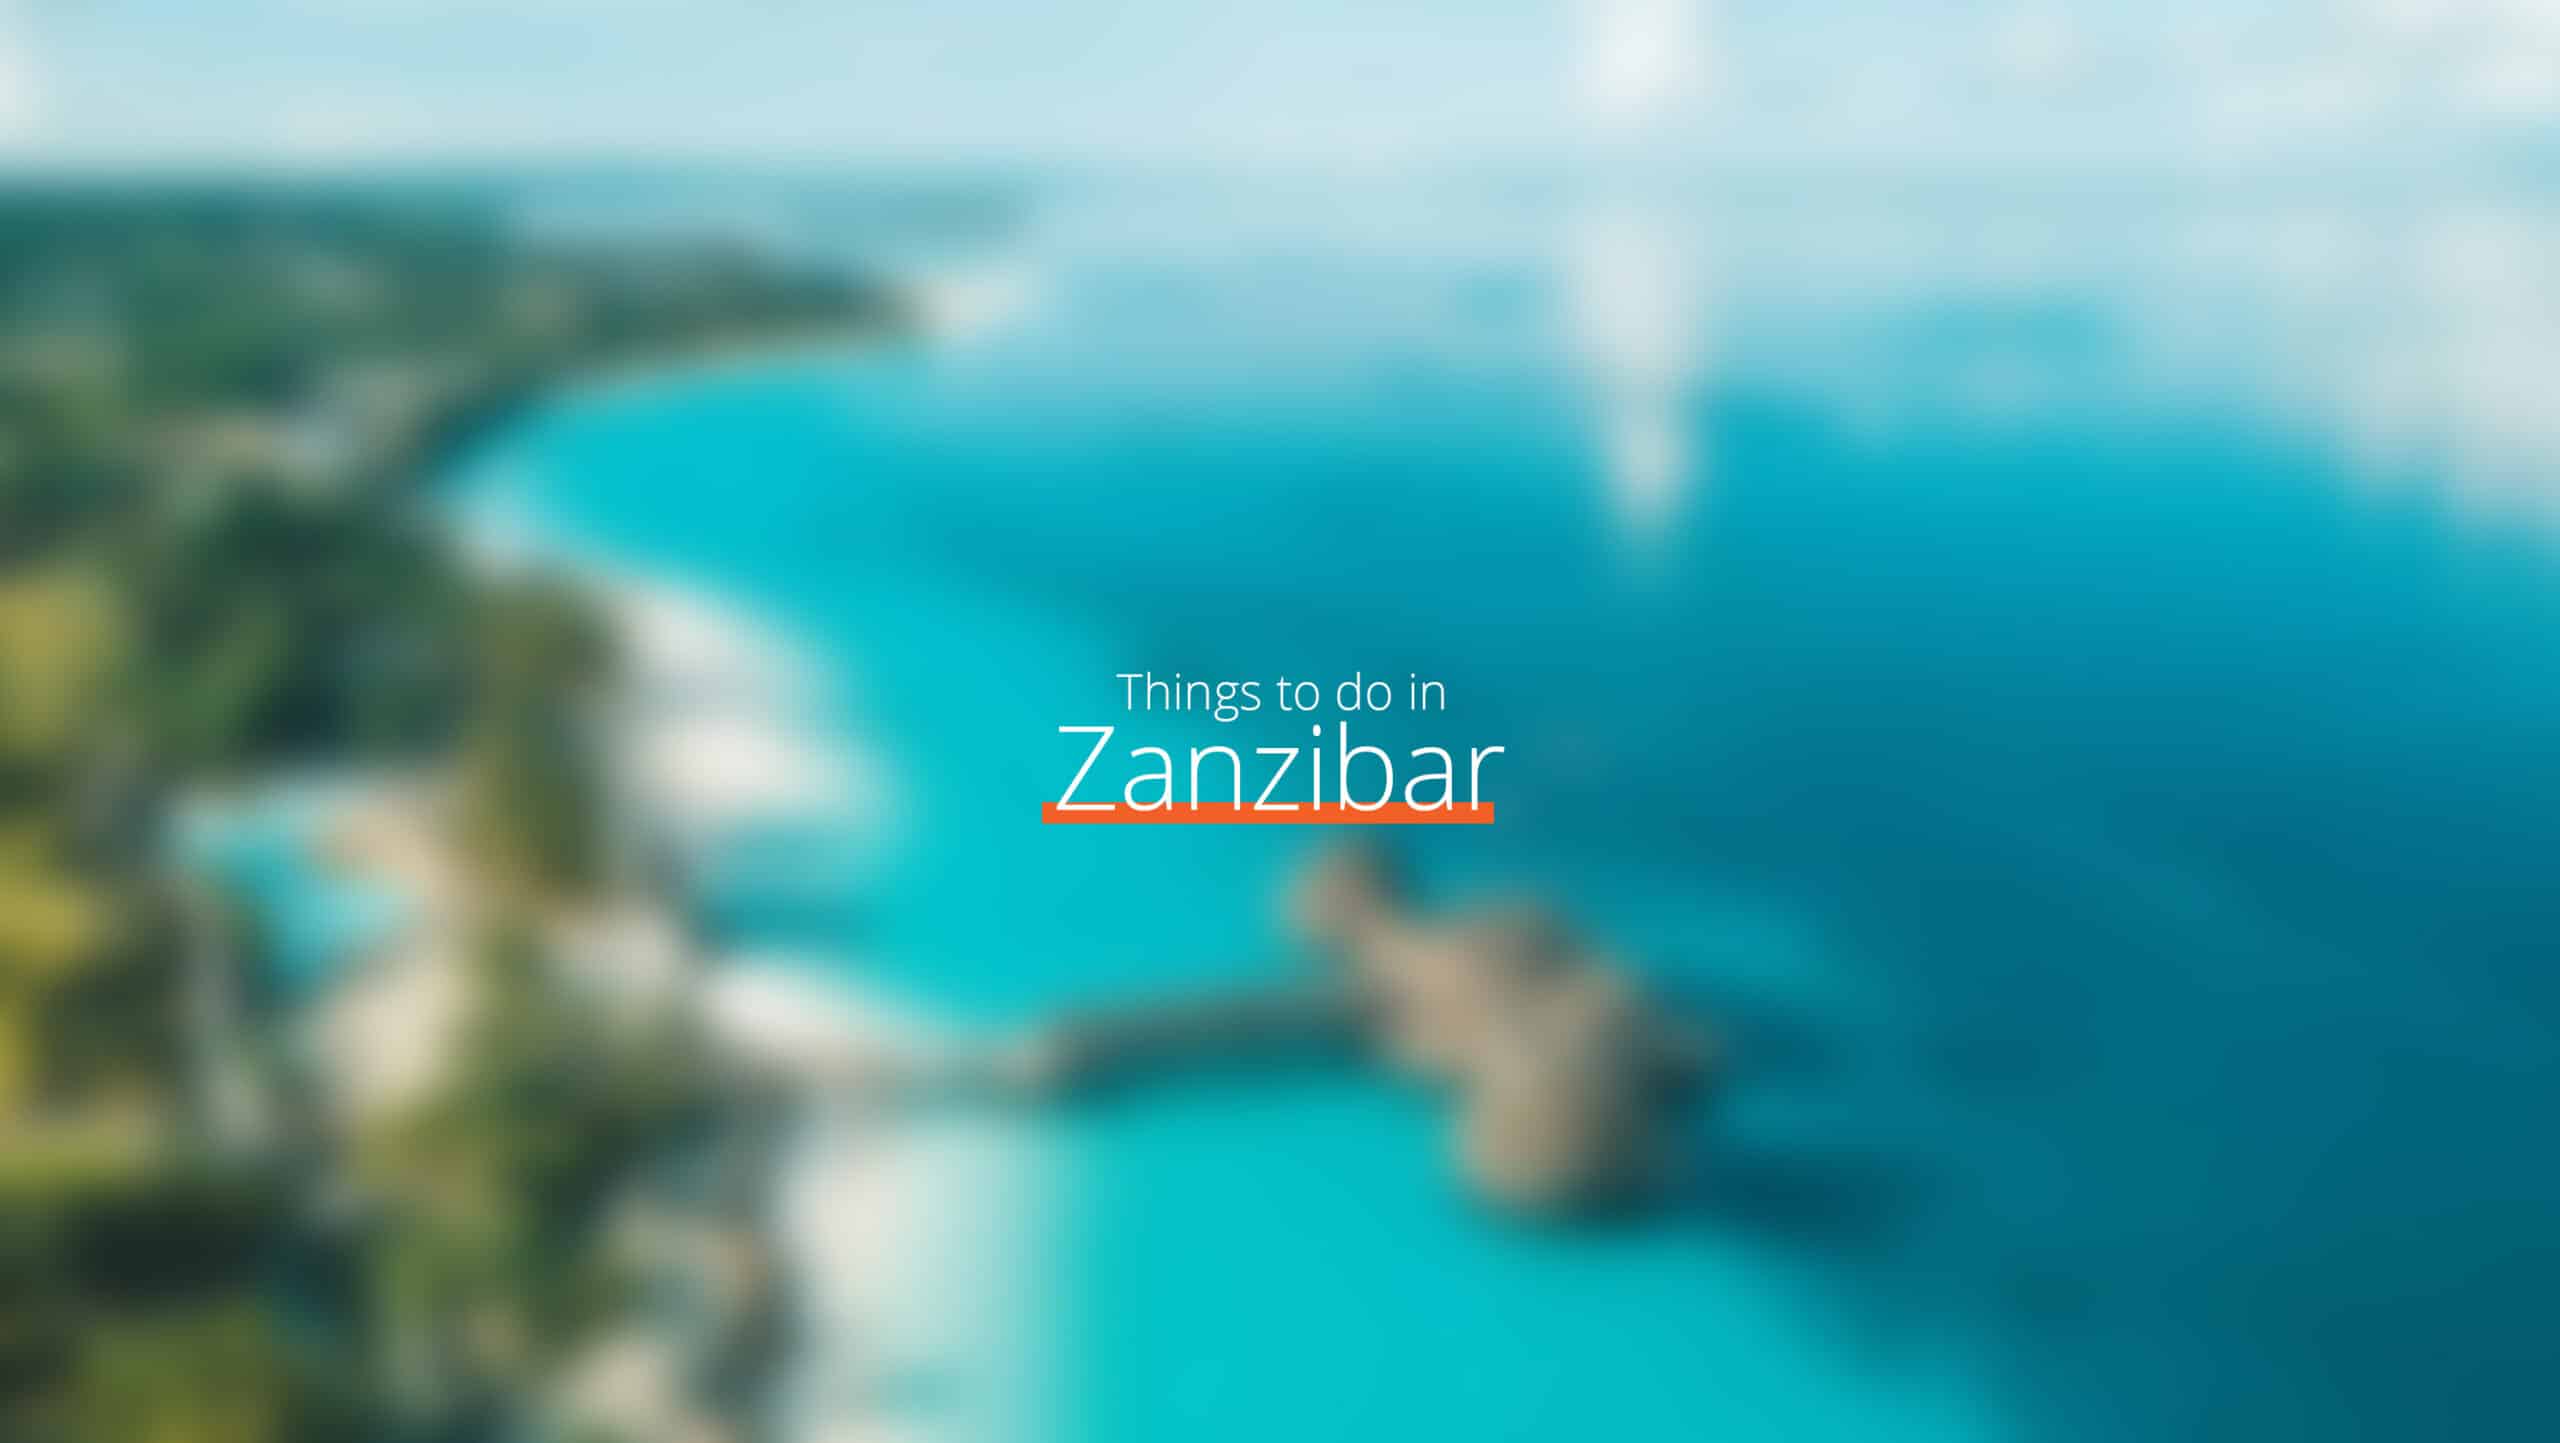 坦桑尼亚 - zanzibar scaled - 去哪里